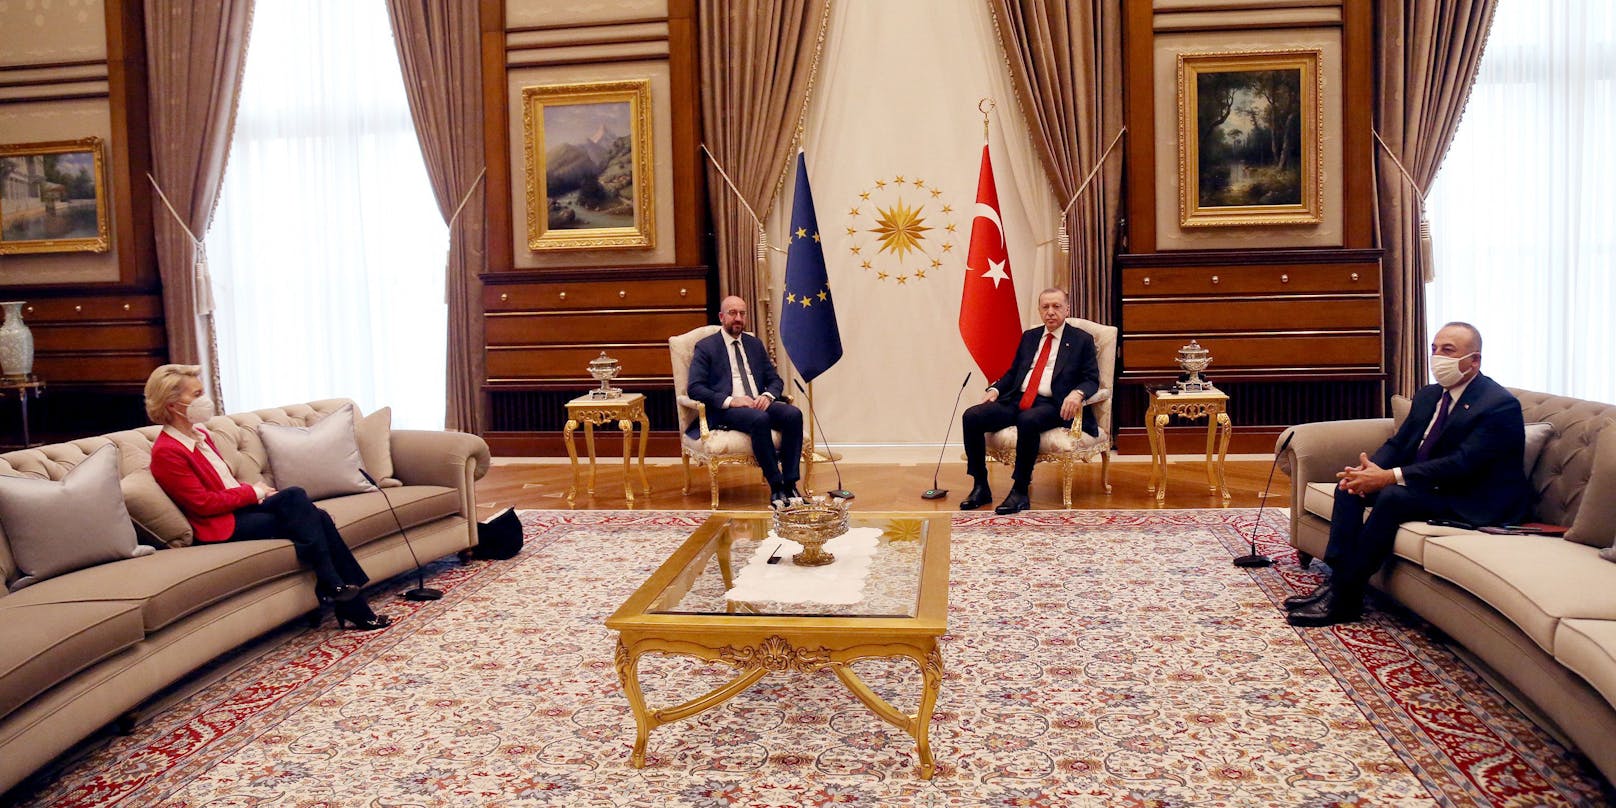 Nichtsdestotrotz setzte sich Von der Leyen auf dem etwas entfernten Sofa hin. Ihr gegenüber saß der türkische Außenminister Mevlüt Cavusoglu, der ebenfalls am Gespräch teilnahm.